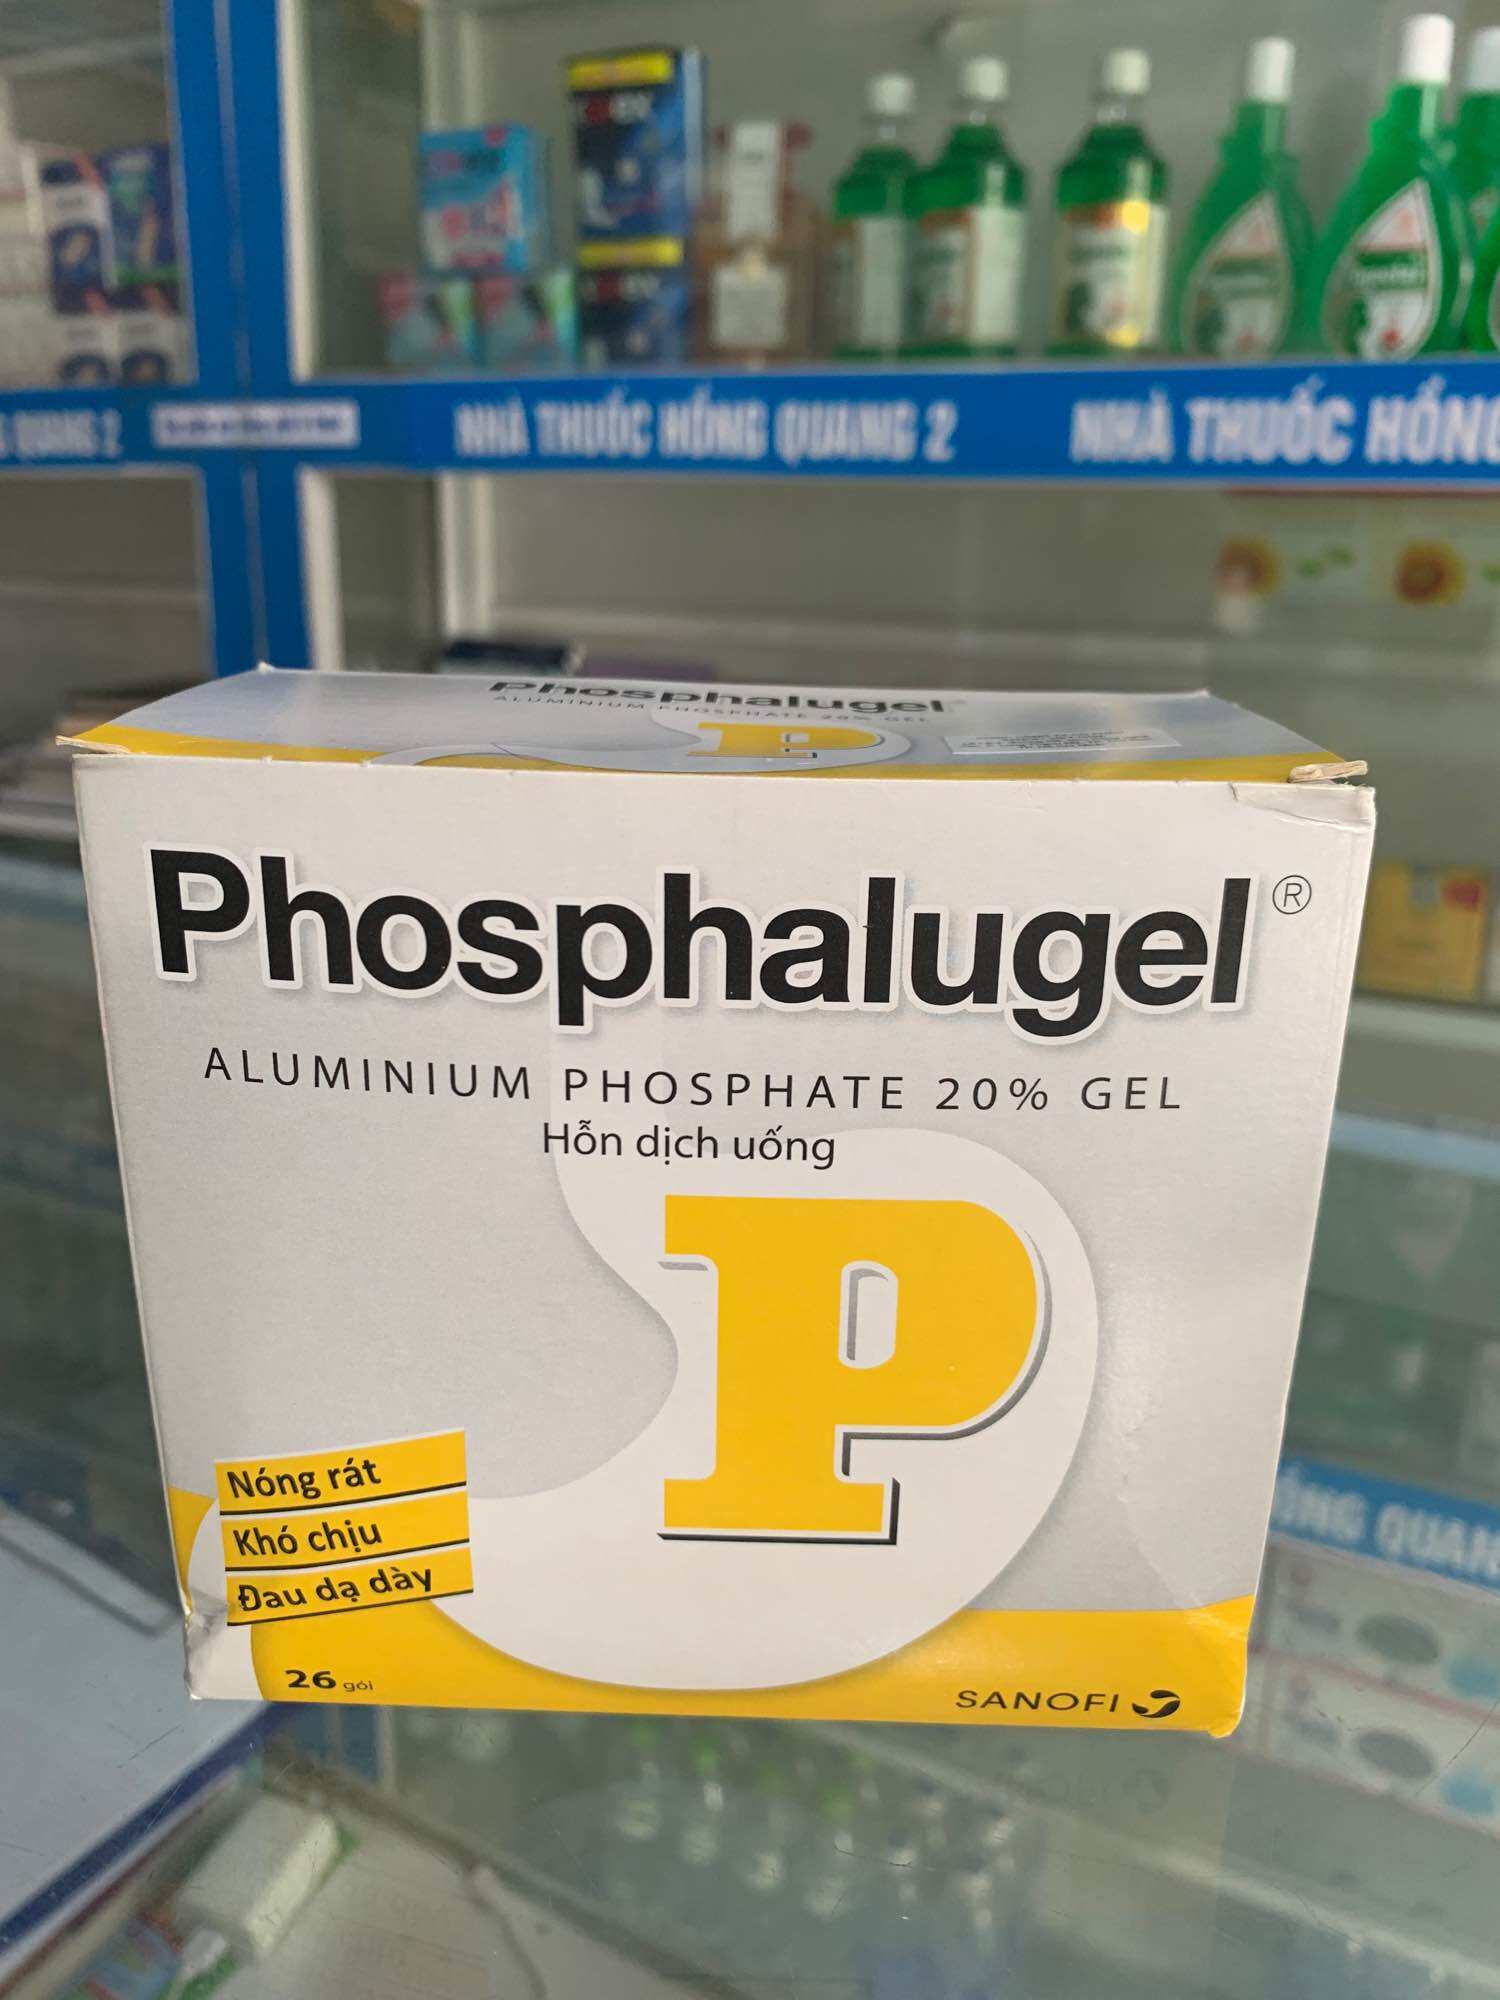 NHÀ THUỐC TỐT  Hỗn Dịch Uống Phosphalugel 20% Giảm Độ Axit Của Dạ Dày Của